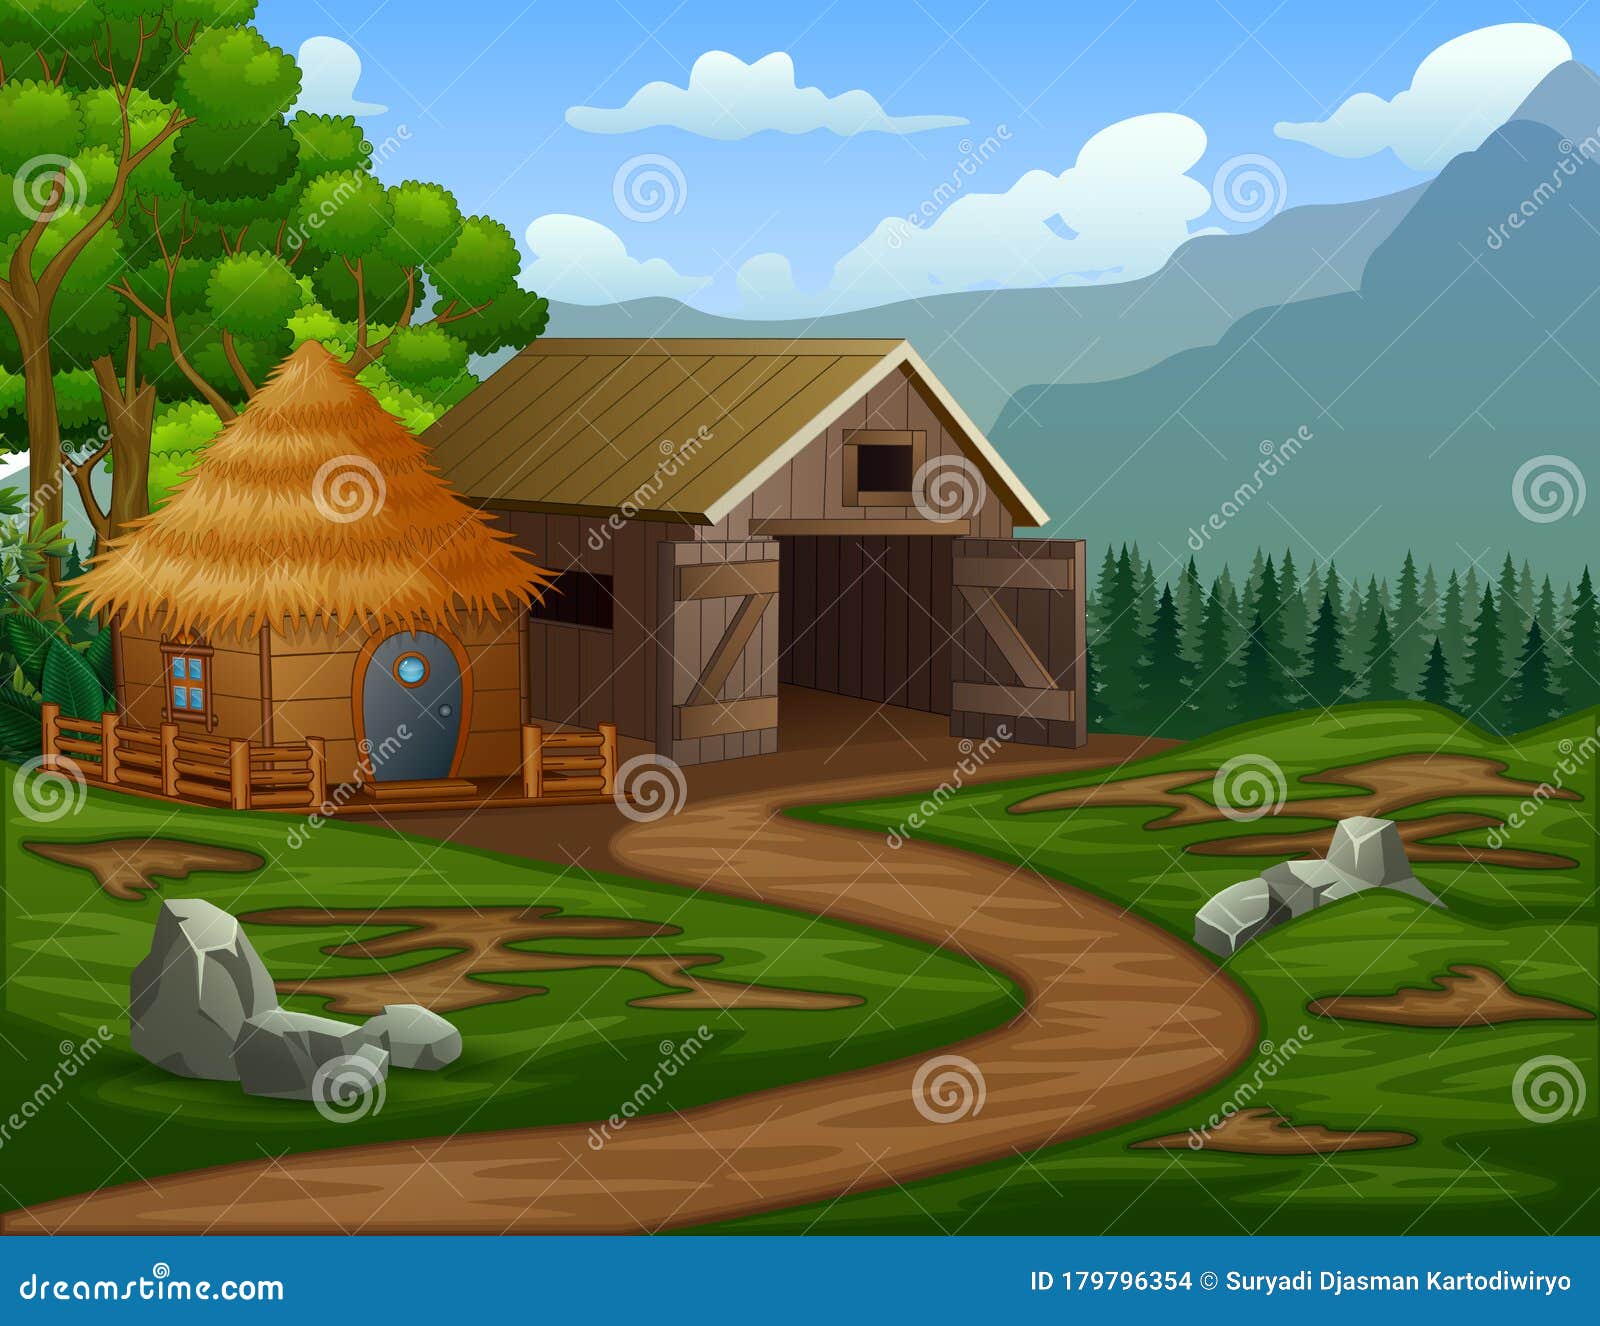 cartoon barn house with a cabin in the farmland